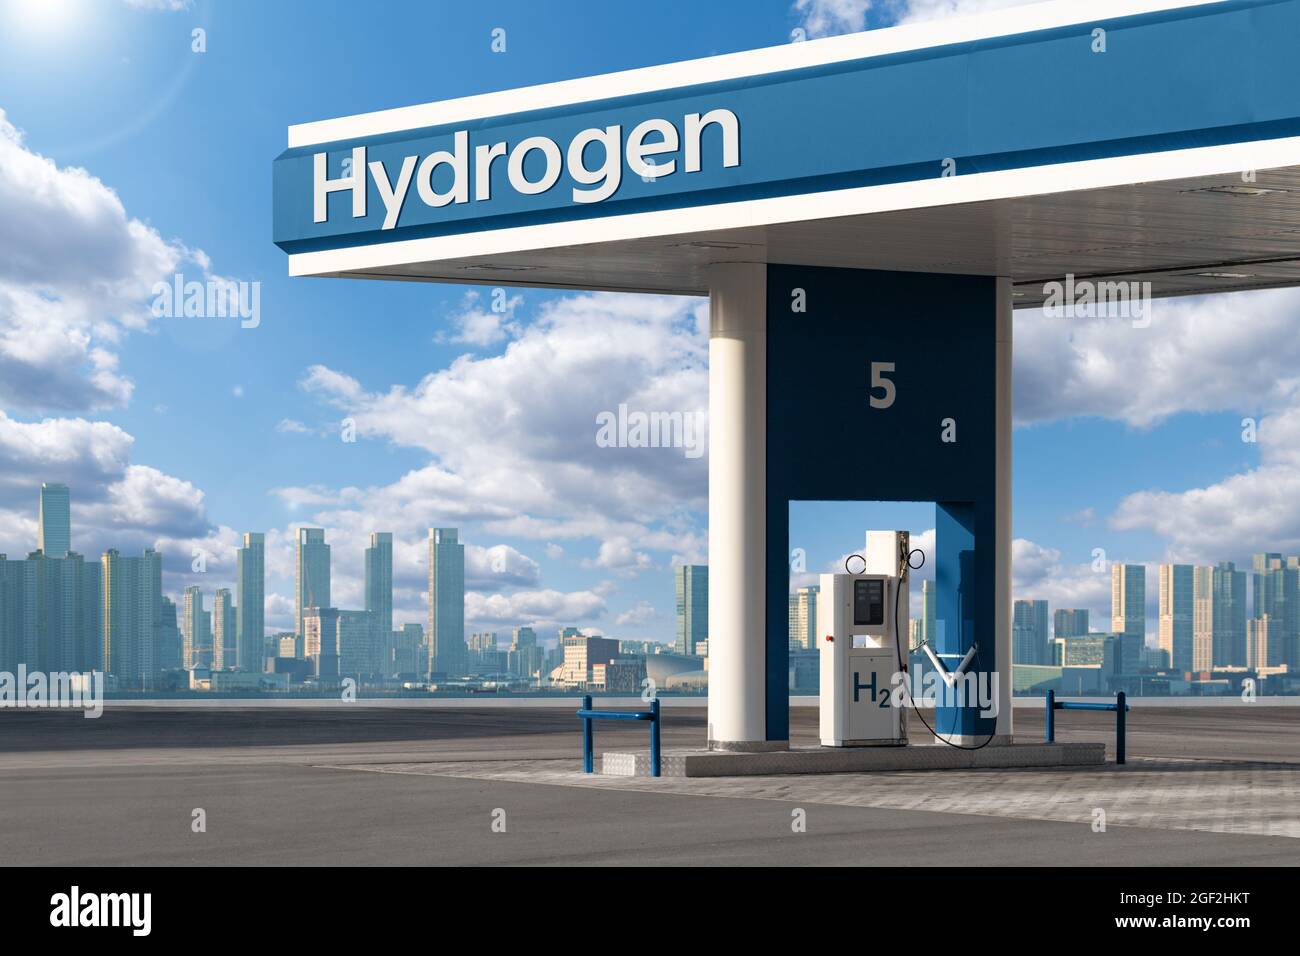 Hydrogen filling station on a background of modern city landscape. Concept Stock Photo